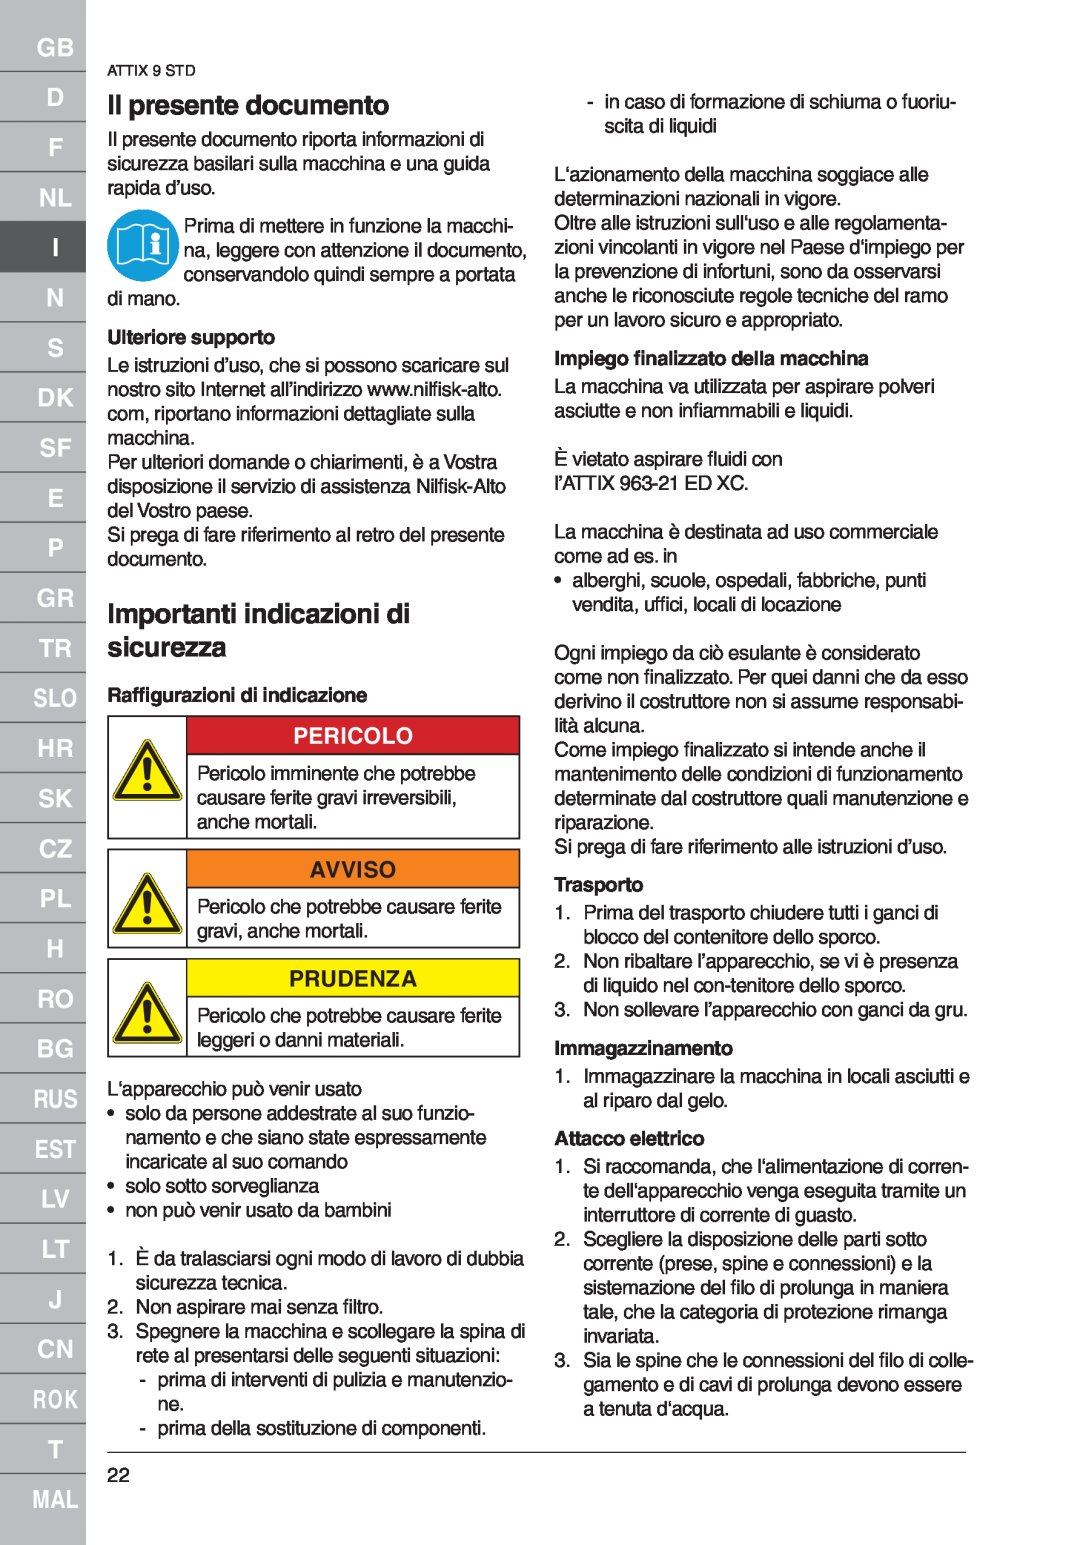 Nilfisk-ALTO 961-01 Il presente documento, Importanti indicazioni di sicurezza, Pericolo, Avviso, Prudenza, Trasporto 